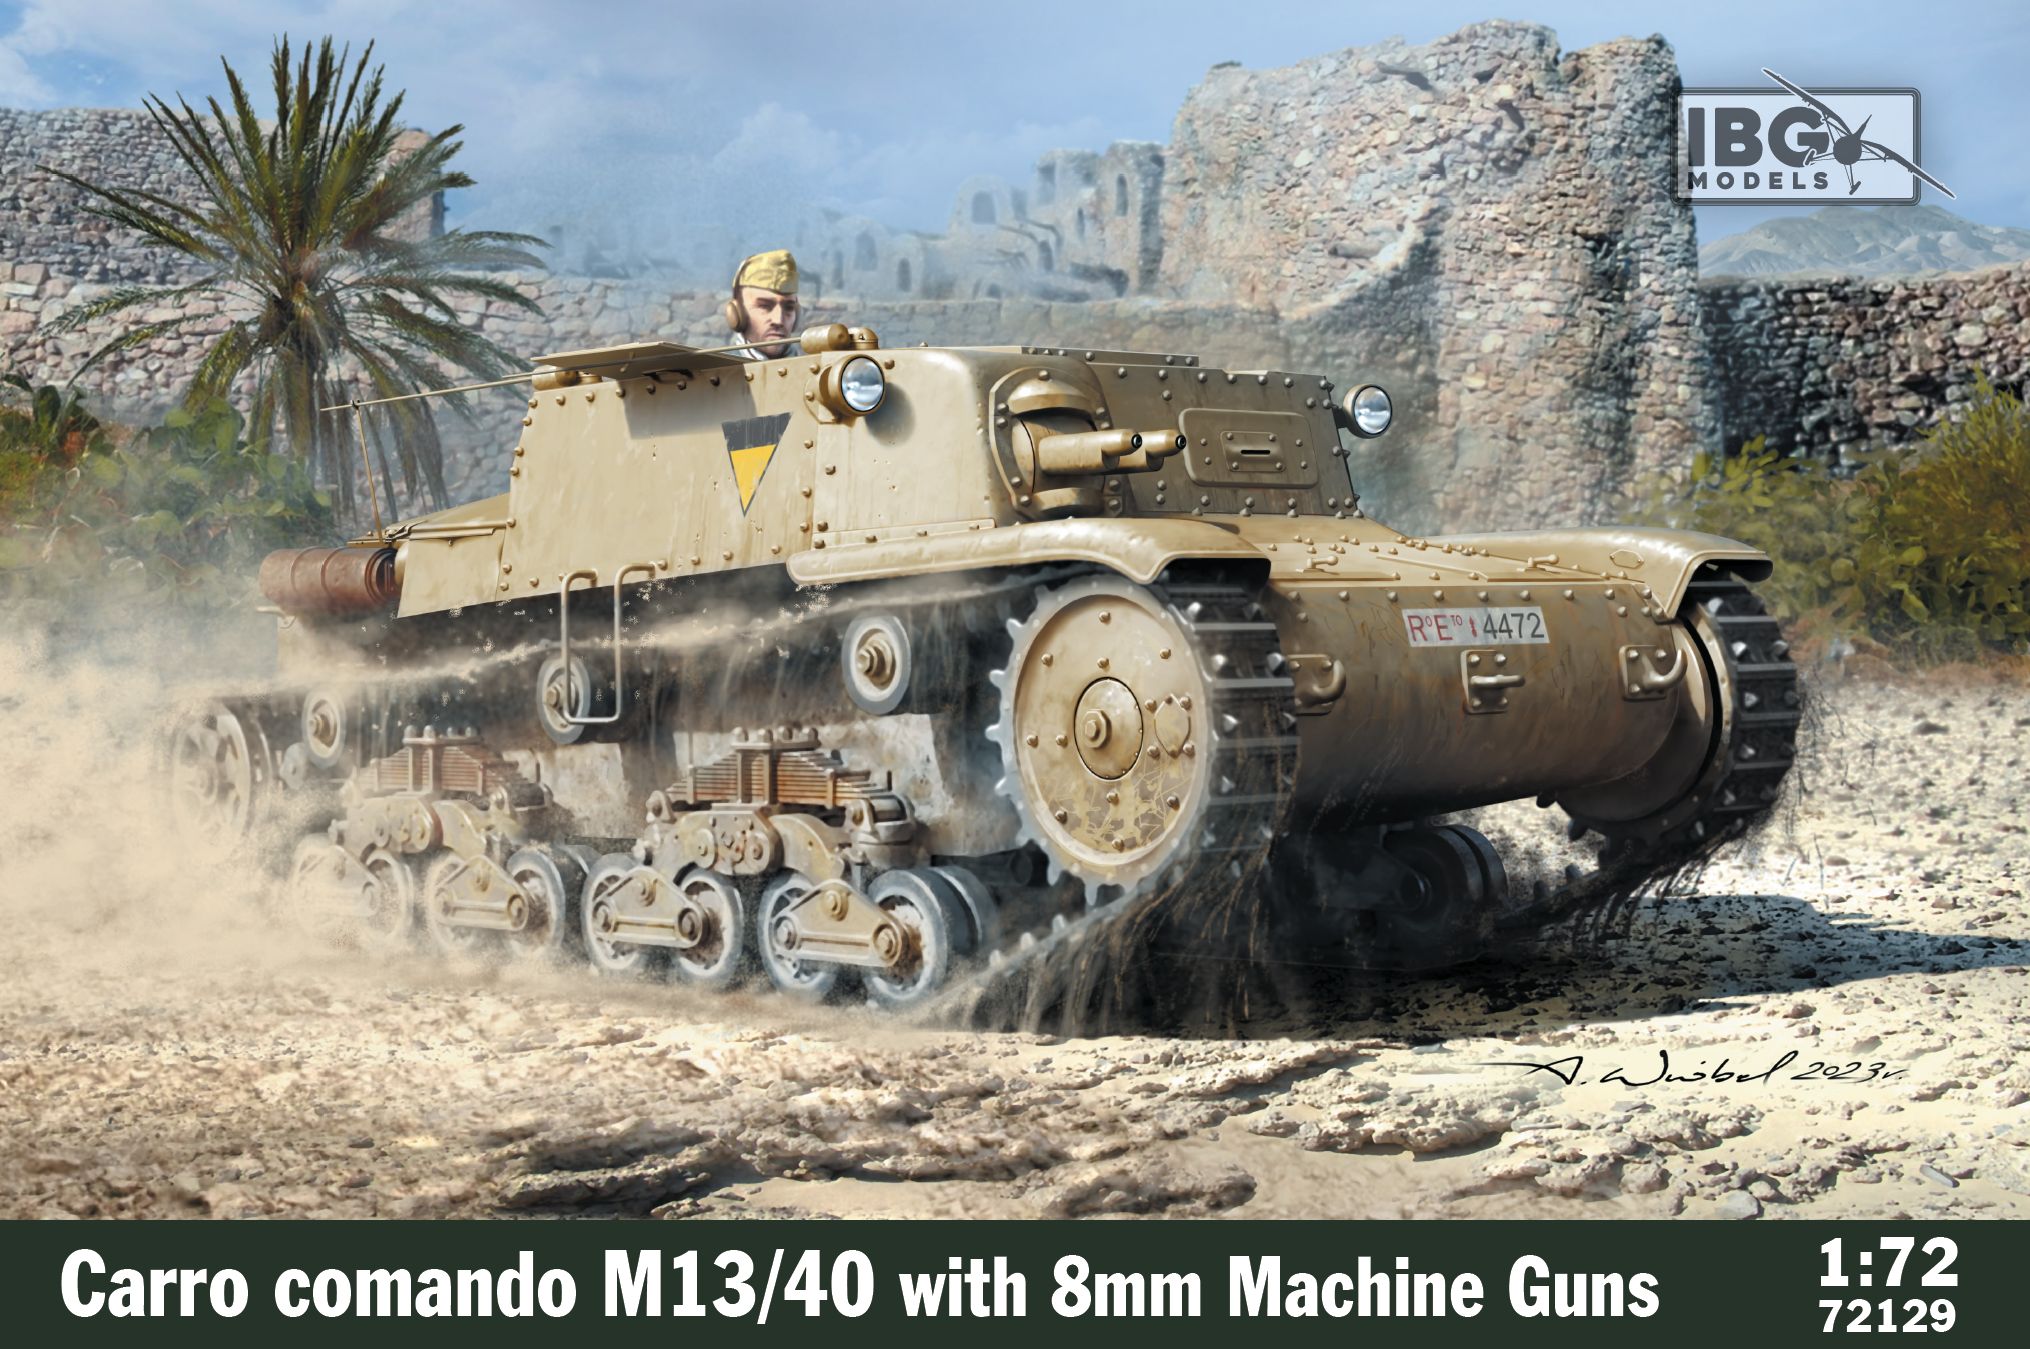 M14/41 Carro Comando with 8mm guns